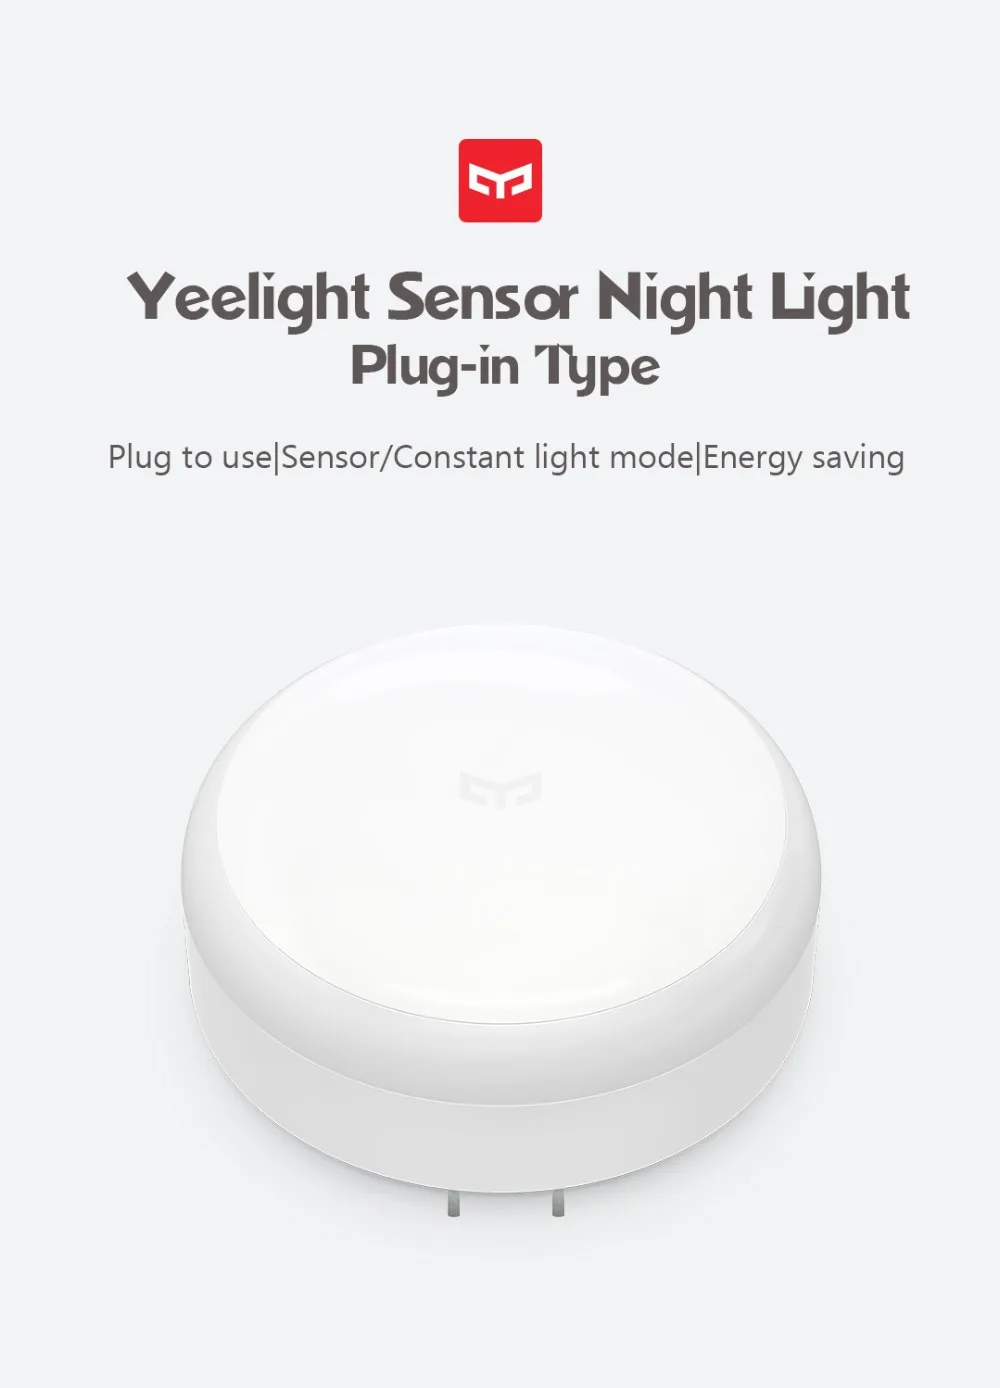 Продается в комплекте Xiaomi mijia Yee светильник индукционный ночной Светильник(Подключаемая версия) YLYD03YL светодиодный светильник кровать светильник s для спальни коридор Wal